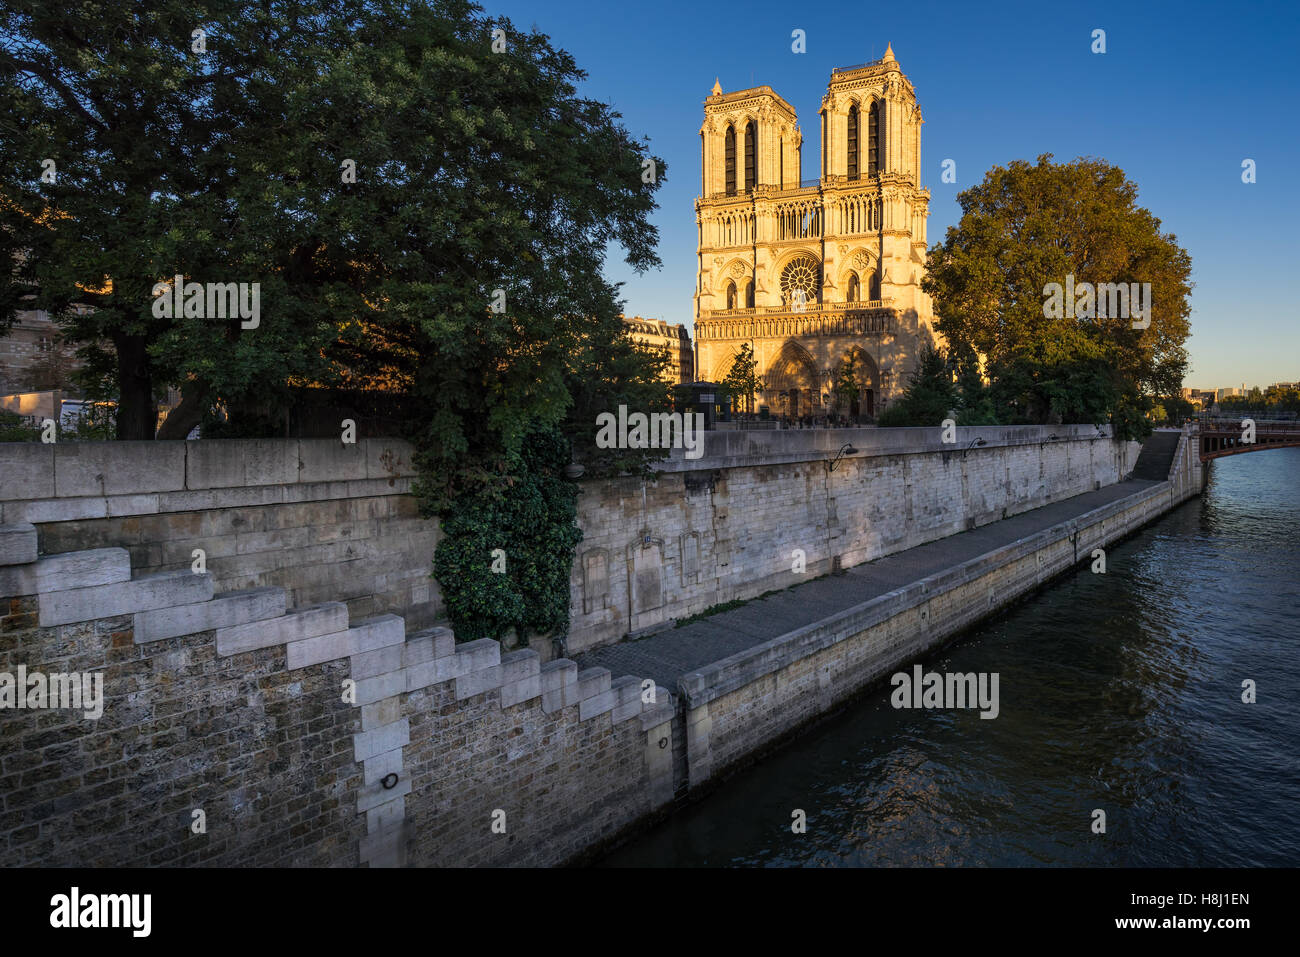 Notre Dame de Paris cathedral at sunset with the Seine River on Ile de La Cite. 4th Arrondissement, Paris, France Stock Photo